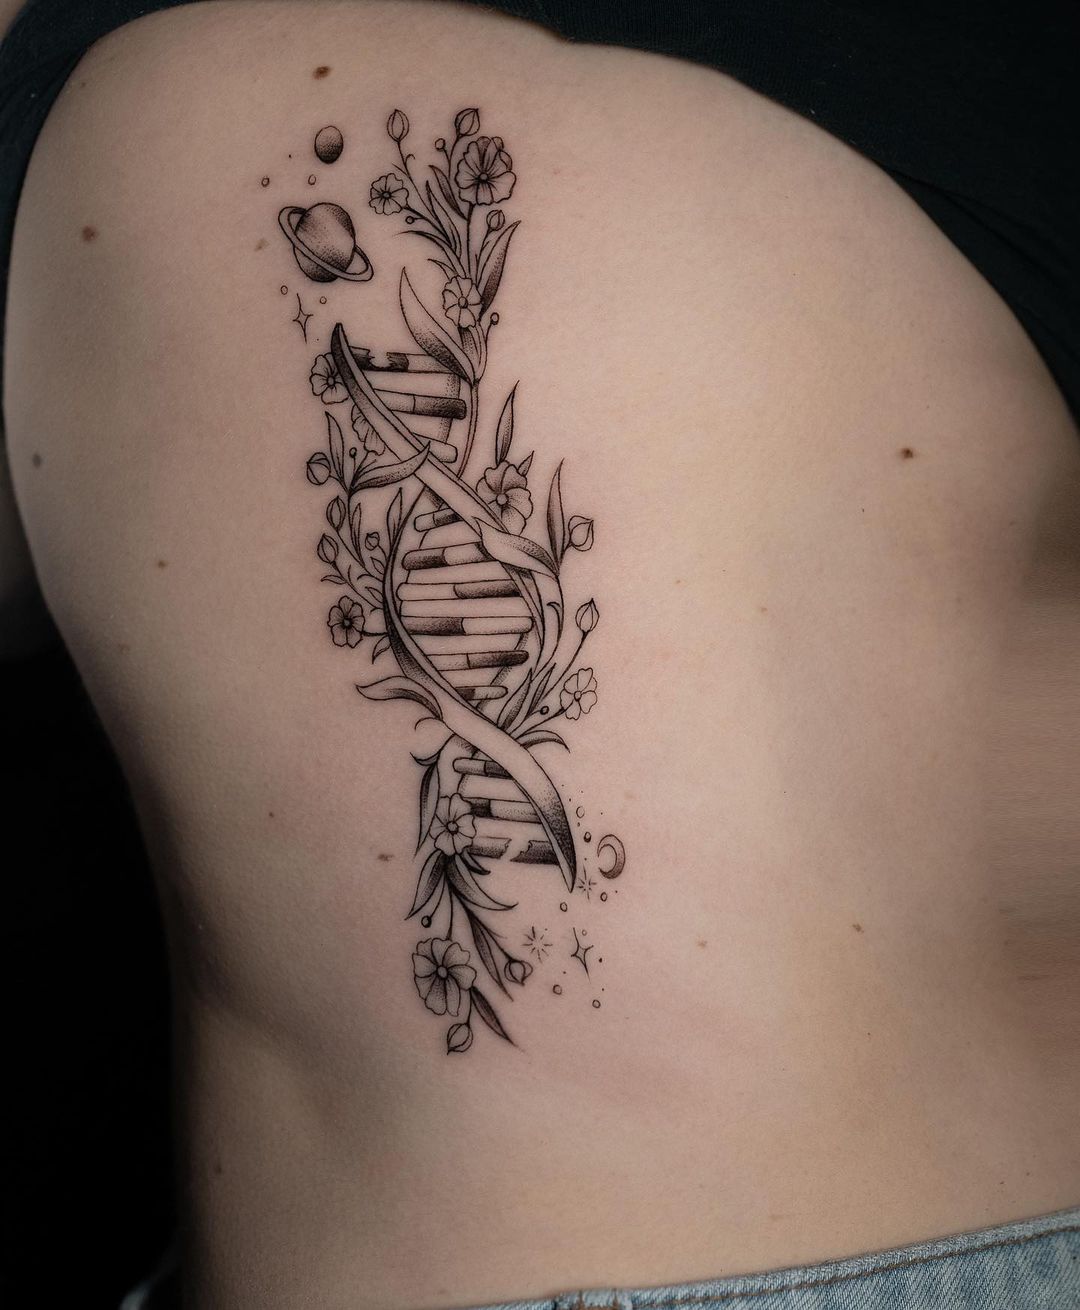 DNA rib tattoo